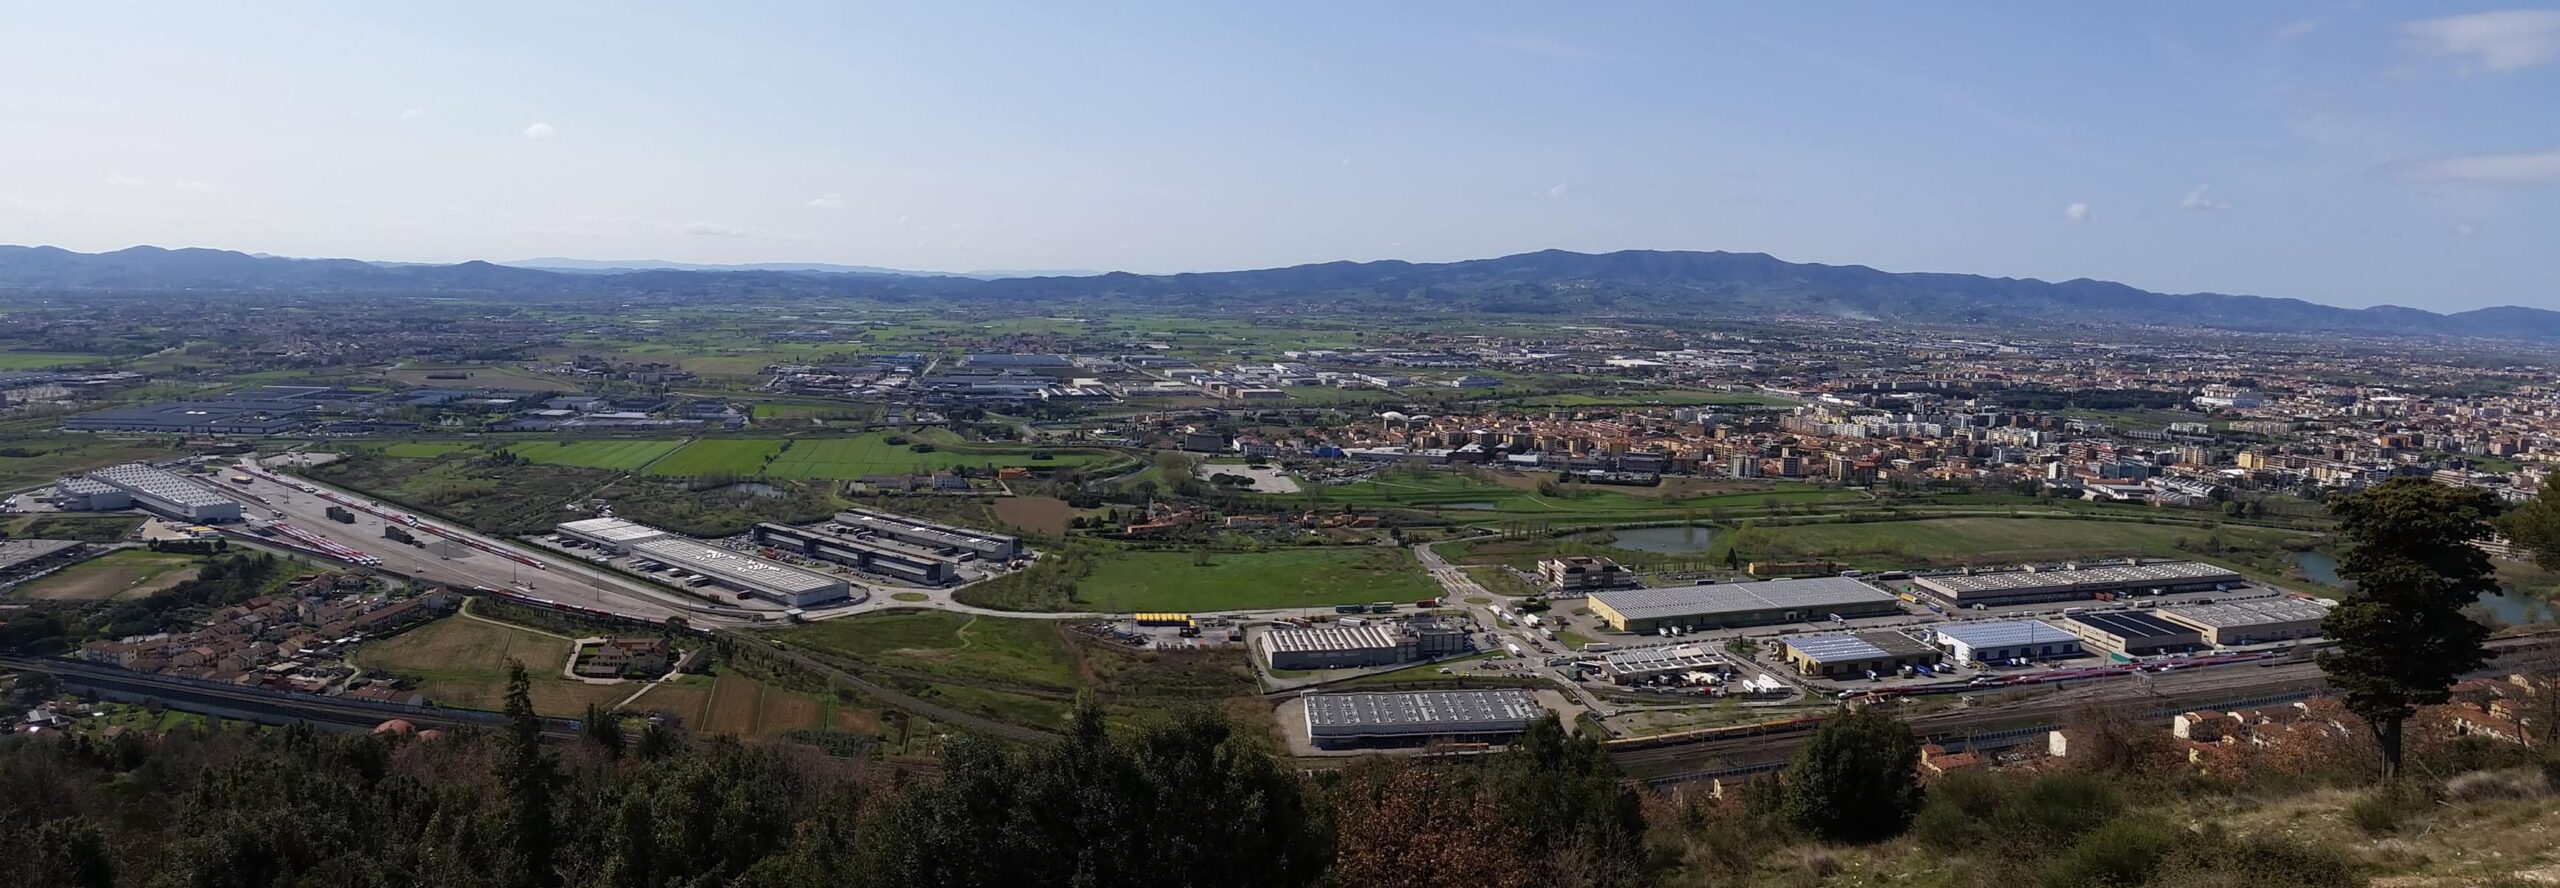 Sostenibilità e tecnologia: l’Interporto Toscana centrale verso un futuro sempre più smart